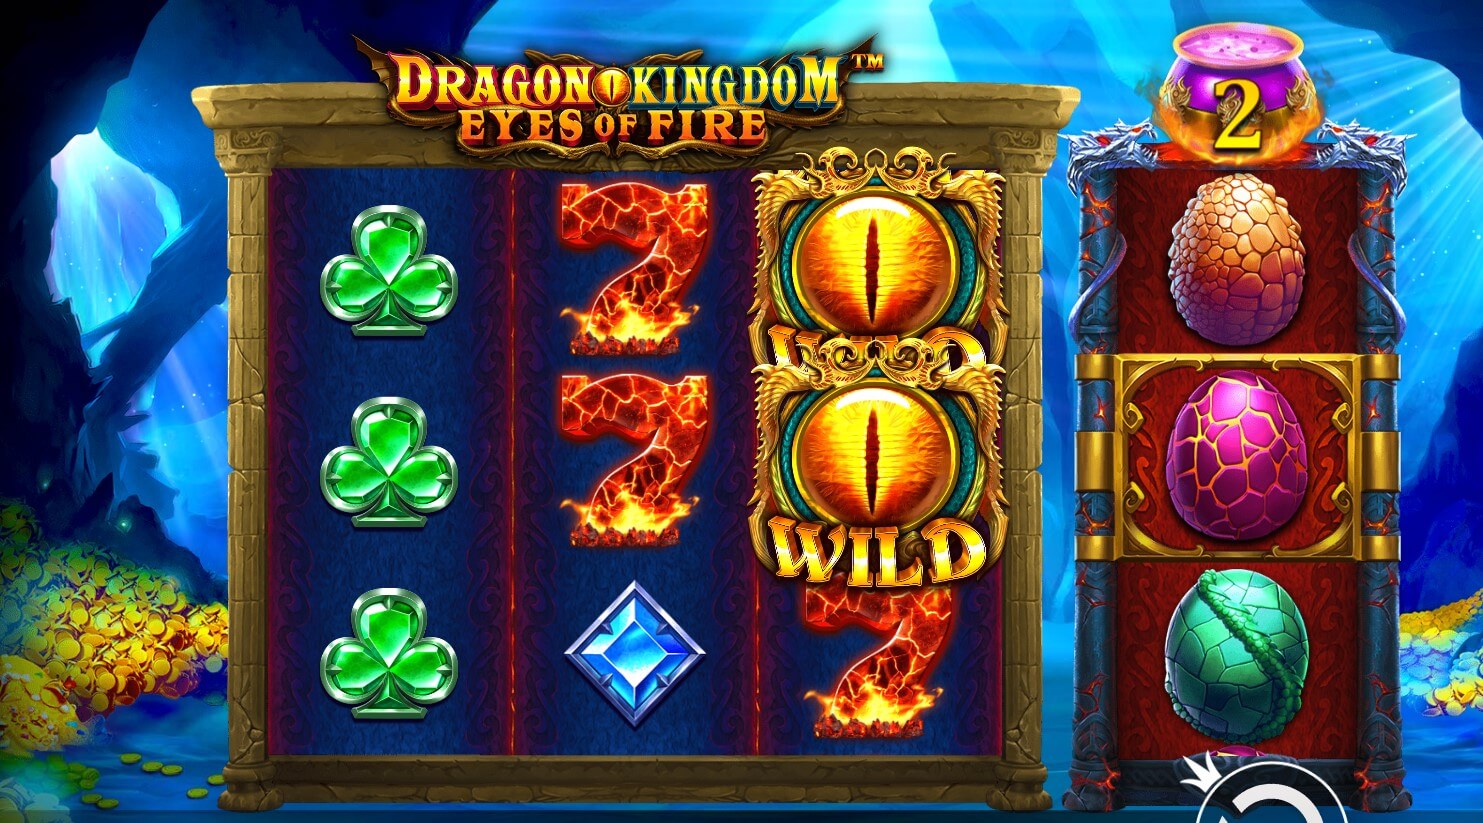 Dragon Kingdom Eyes of Fire Spielautomaten Bewertung, Walzen und Symbolen